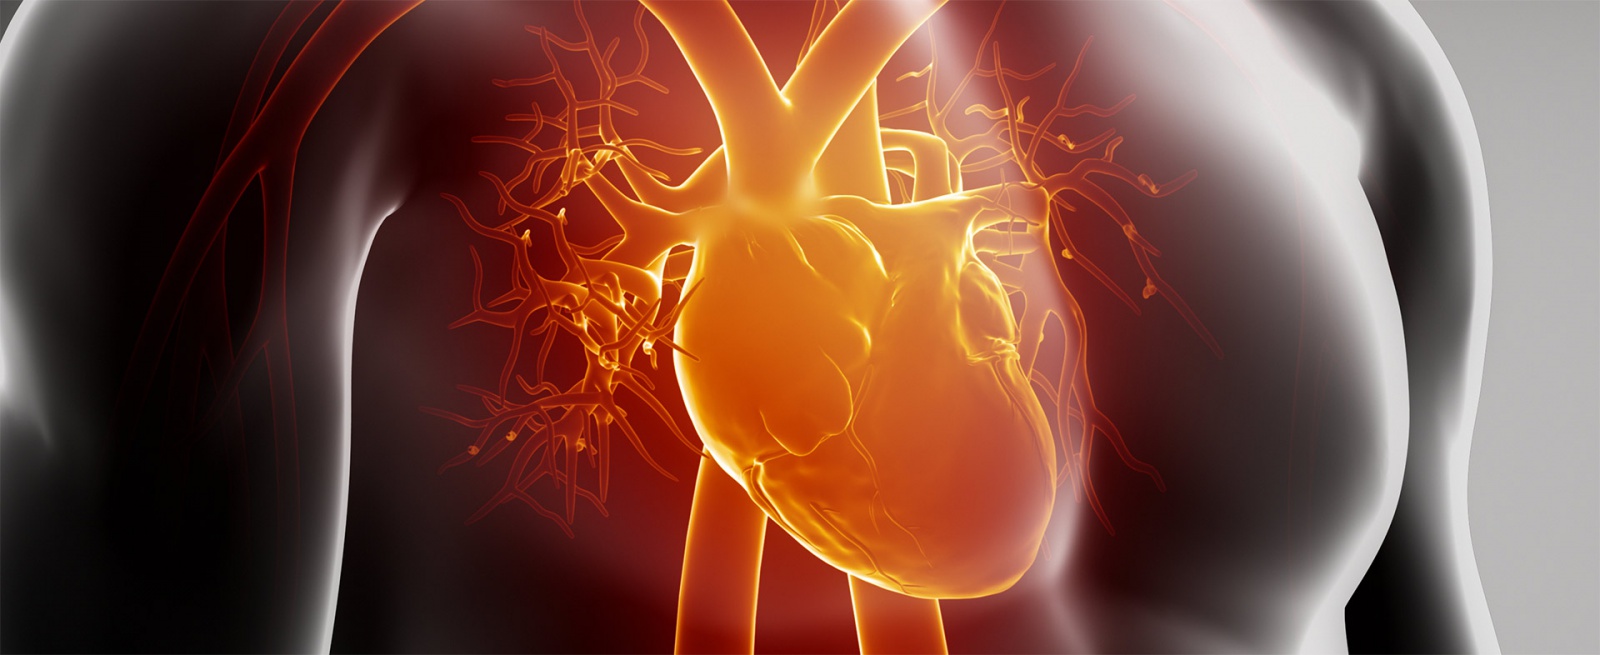 Kardiomiopatie - co to takiego?